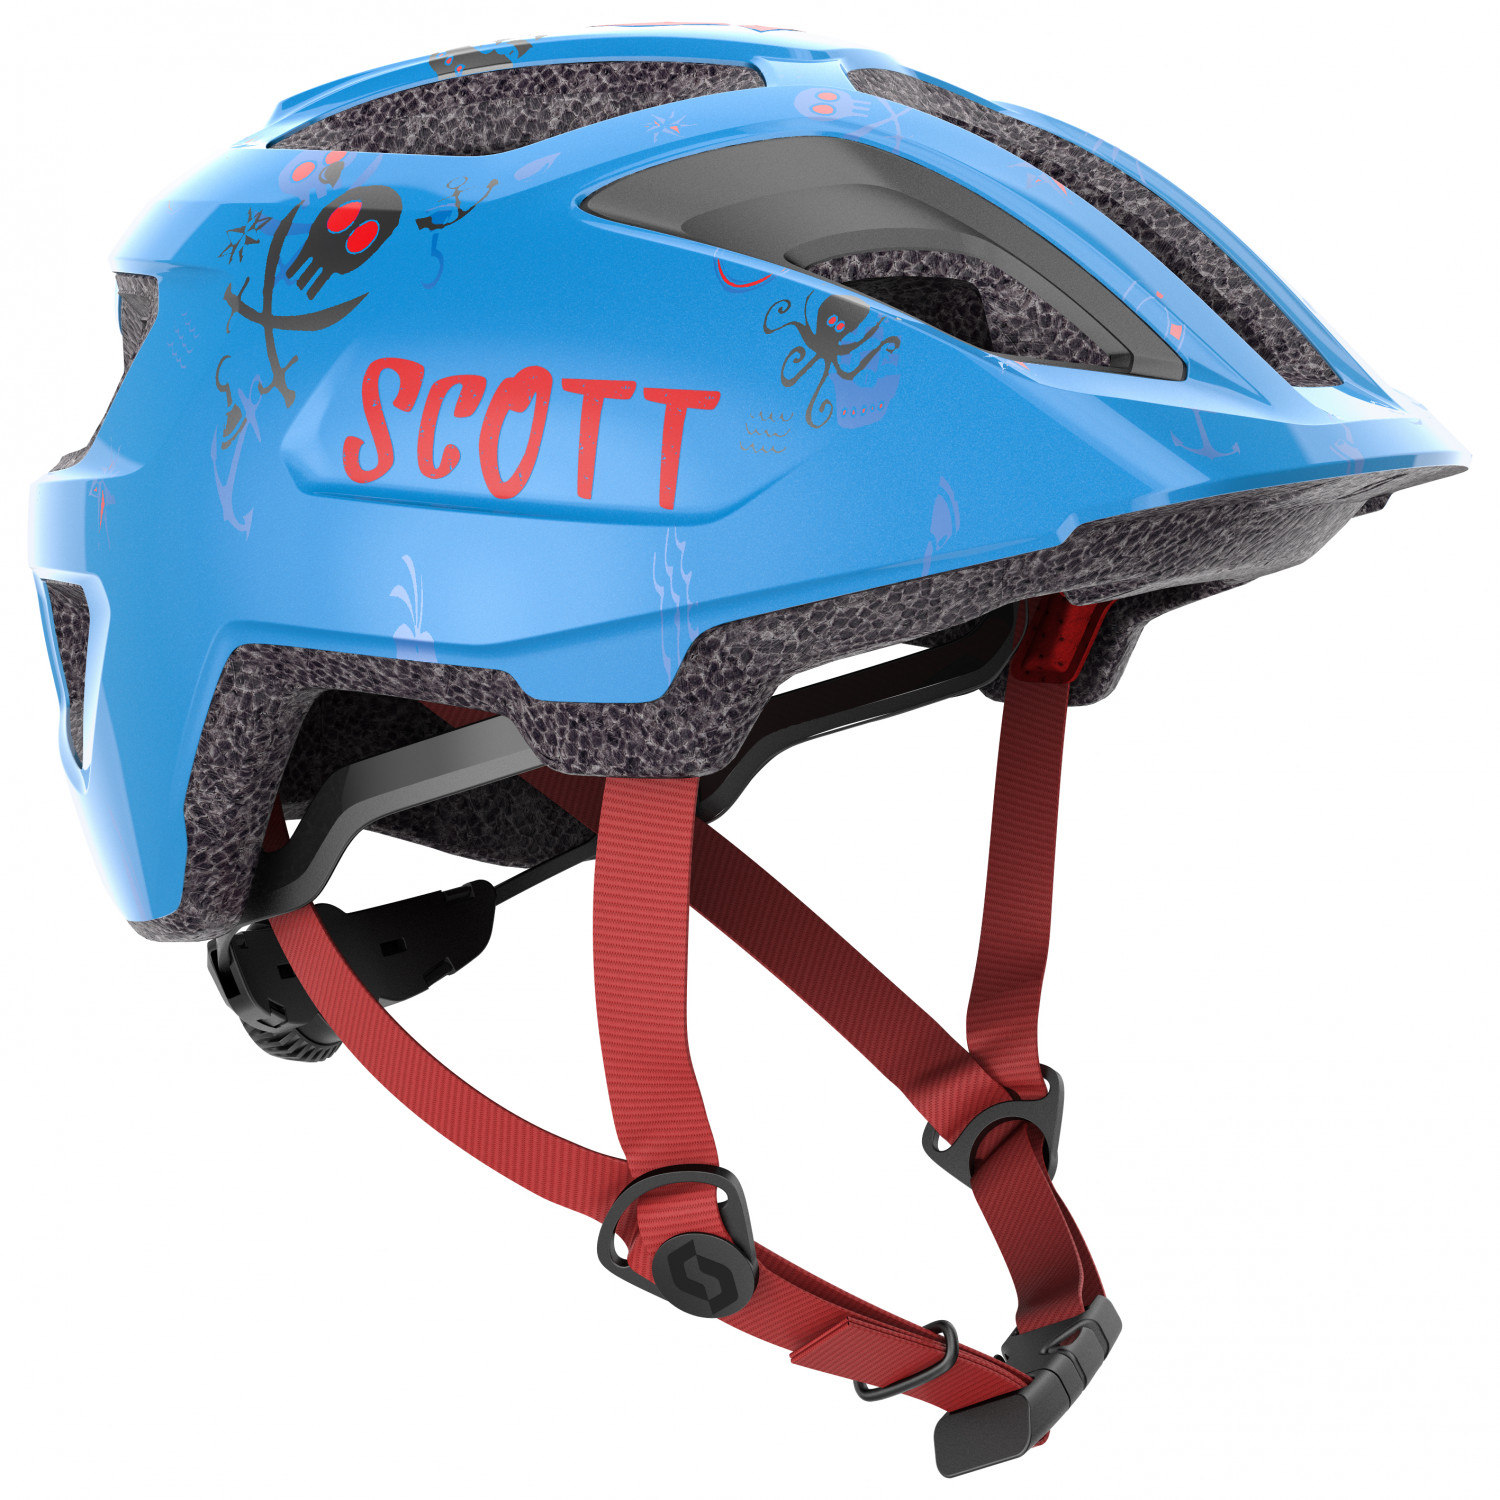 Велосипедный шлем Scott Kid's Helmet Spunto (Ce) Kid, цвет Atlantic Blue шлем scott spunto kid ce atlantic blue